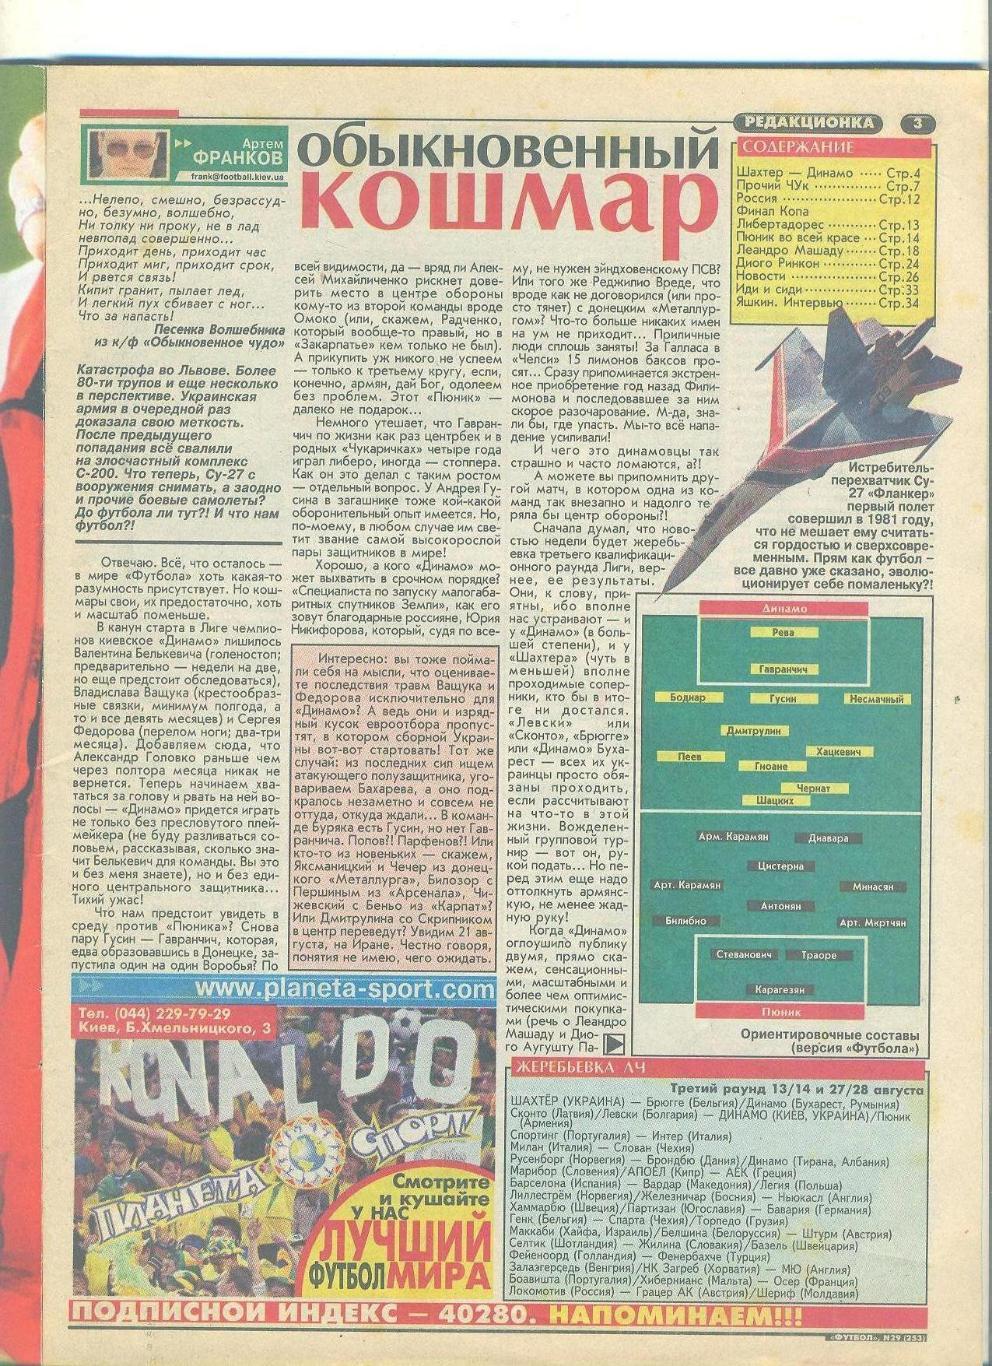 Футбол-Украина-2002(N-29,Динамо Киев-Пюник)постер-Рио Фердинанд,Манчестер юн 1